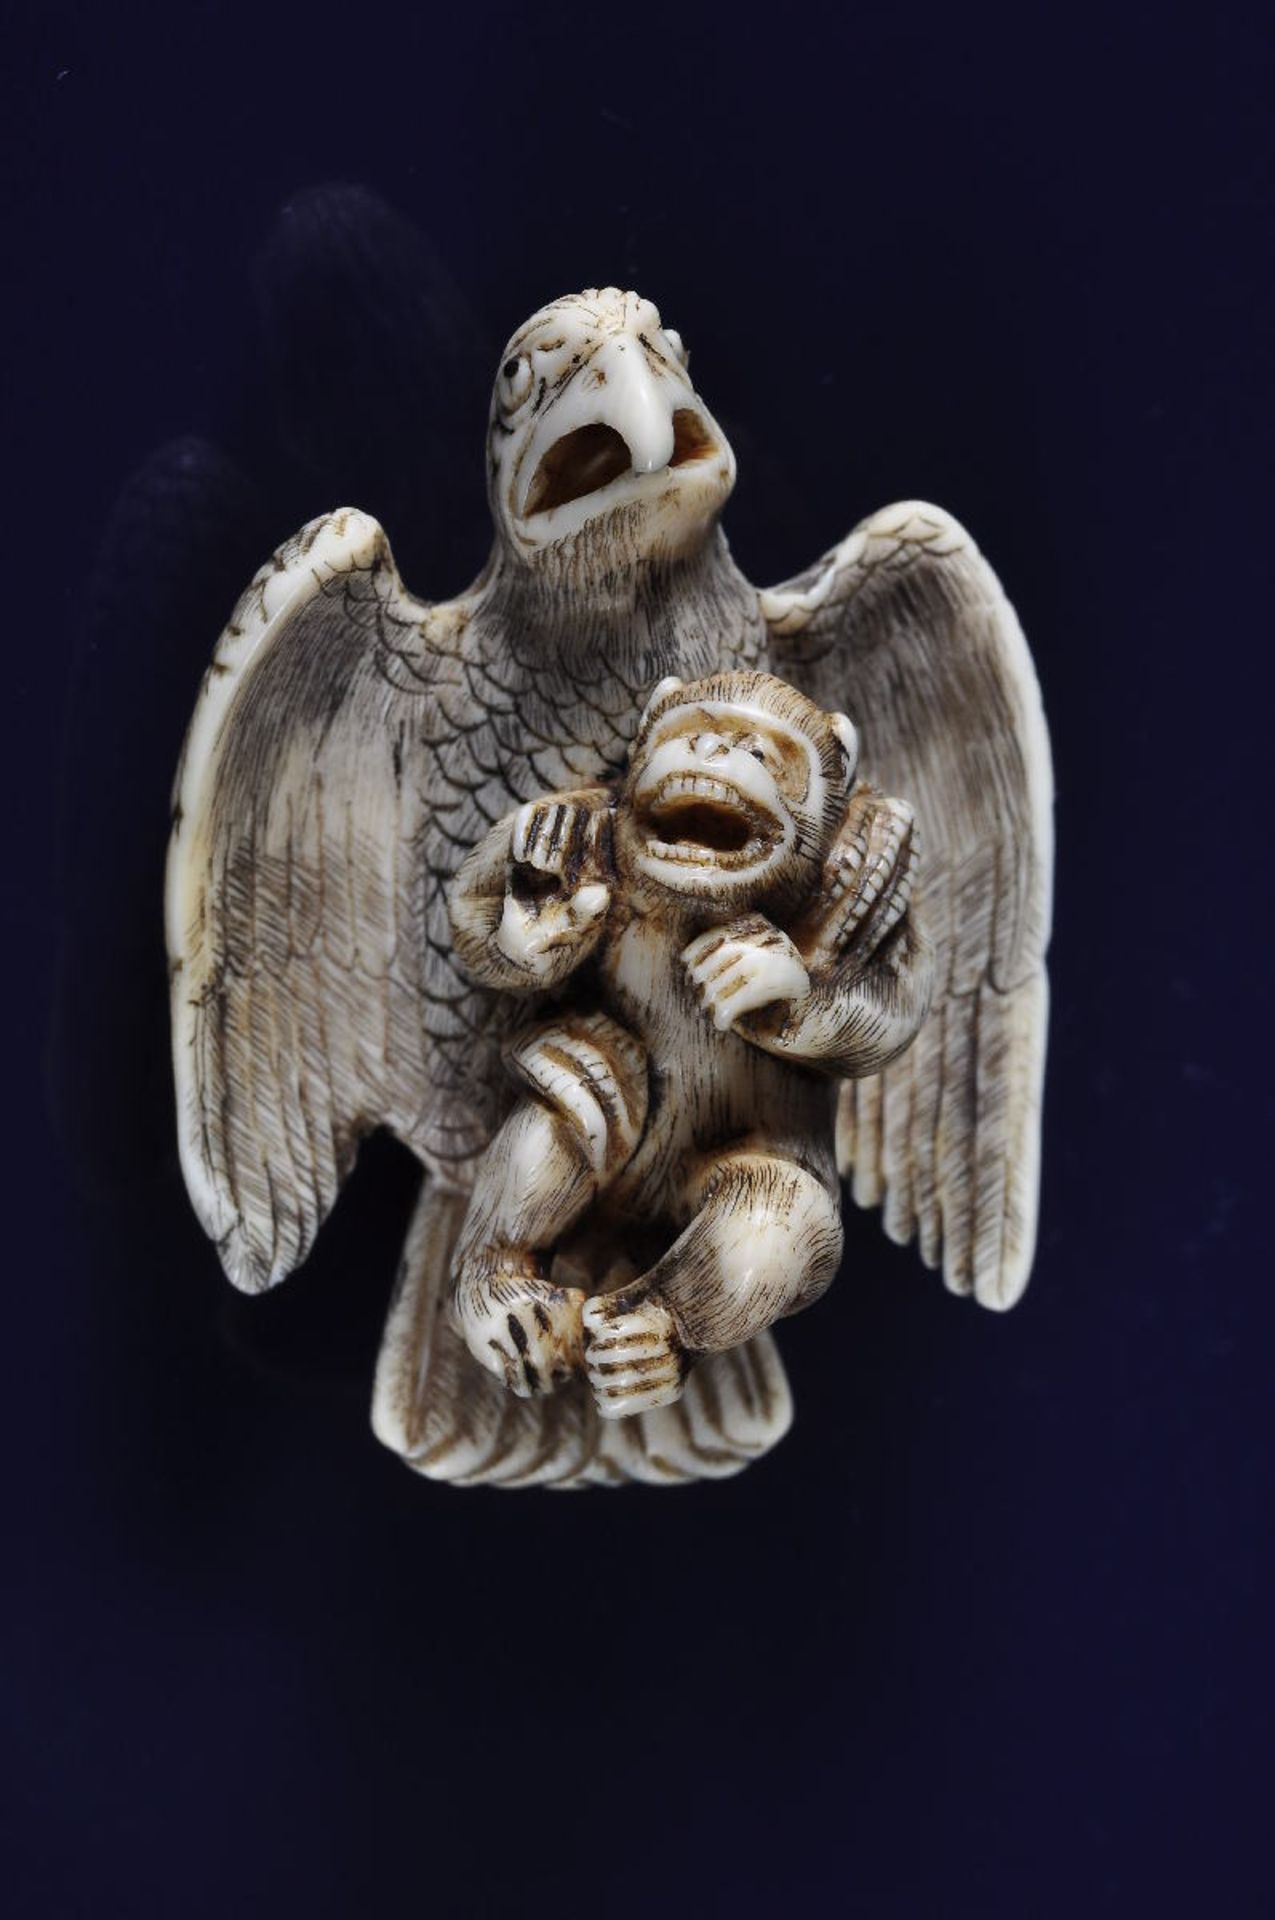 KIYOZUMI: A DRAMATIC SCENE OF AN EAGLE CATCHING A MONKEY  Netsuke, ivory. Japan, 19th cent.  The